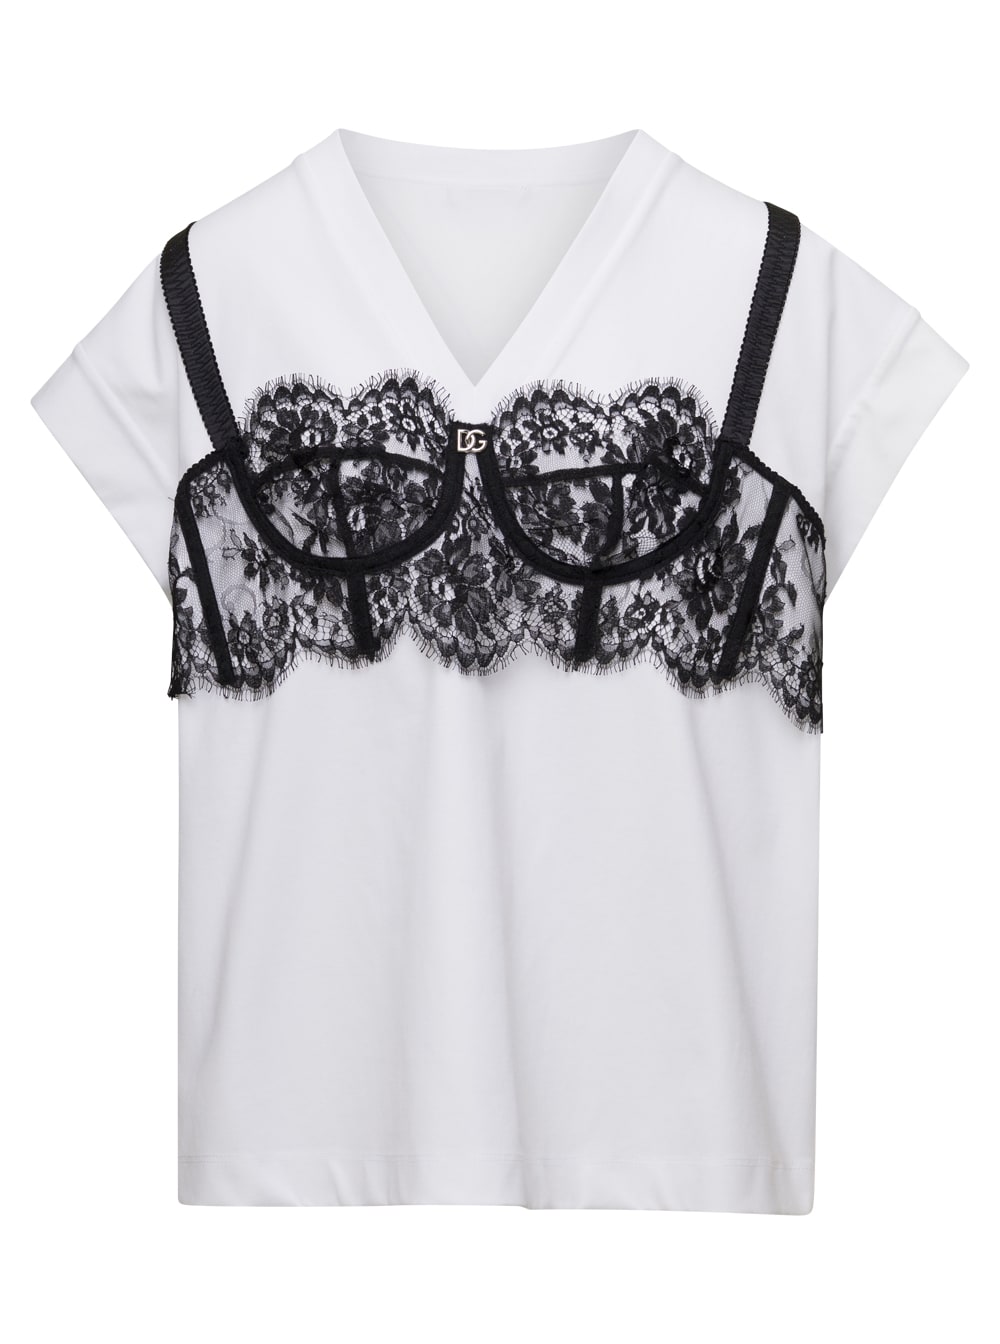 Dolce & Gabbana Short Sleeves T-shirt - Look 54